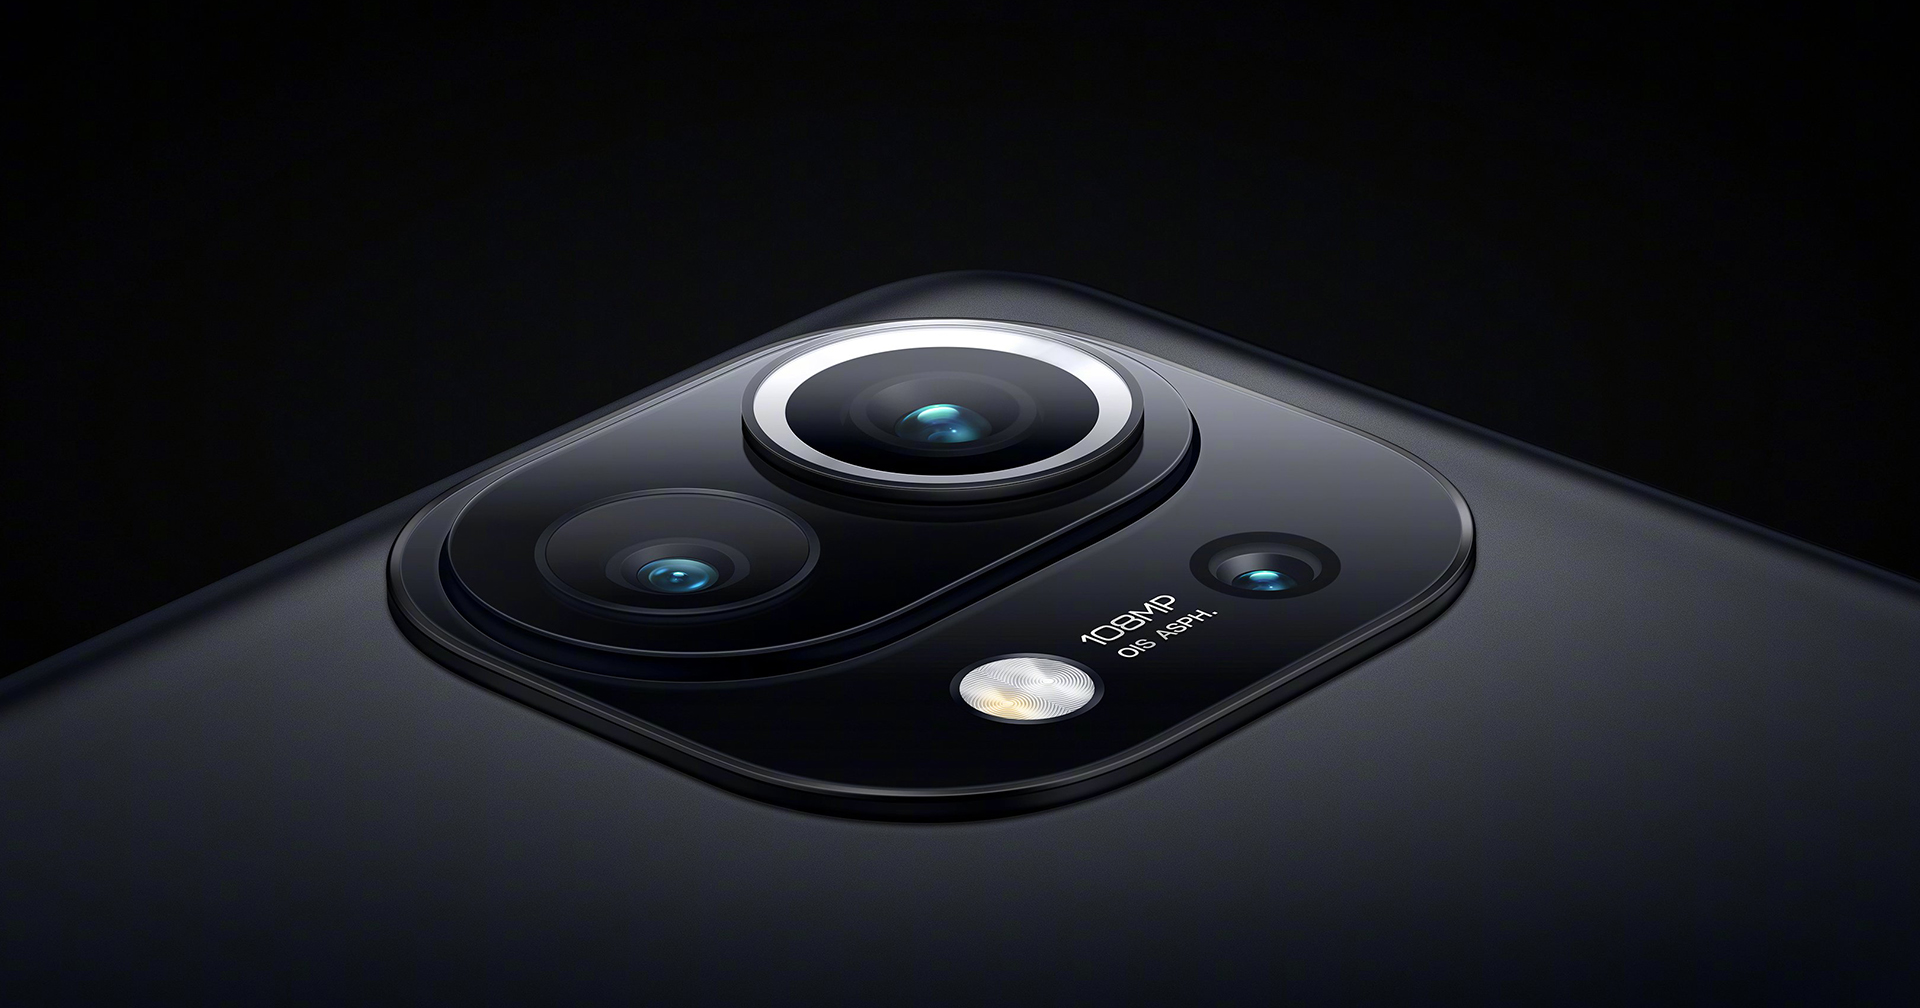 ลือ Xiaomi กำลังพัฒนาสมาร์ตโฟนที่มาพร้อมกล้อง 192 MP : รวม 16 พิกเซล เป็น 1 พิกเซล